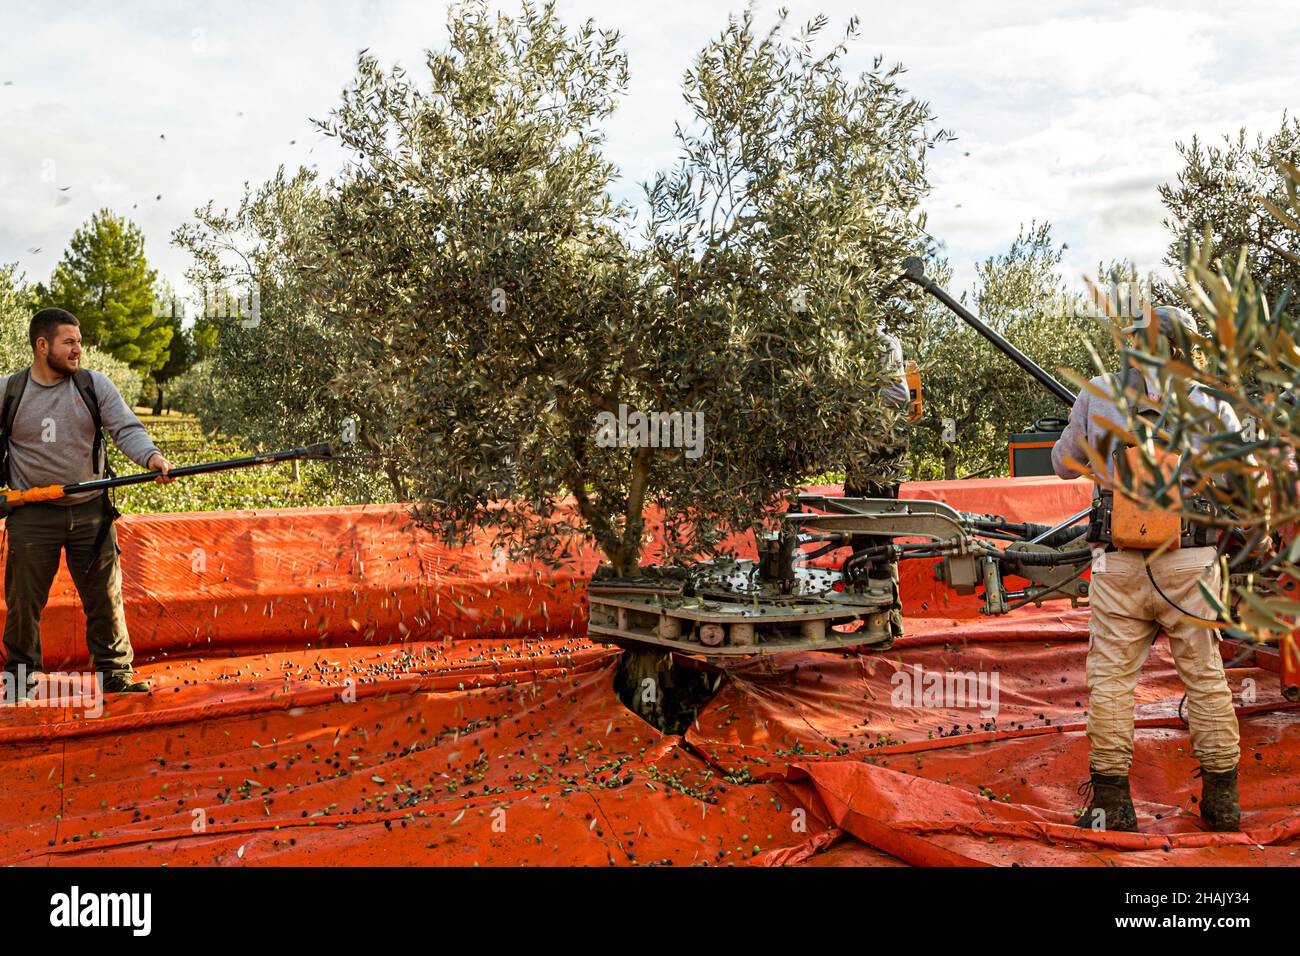 Olivenernte auf dem Weingut Chateau de Taurenne in Aups, Frankreich. Kurz, aber heftig: Der Olivenbaum wird mechanisch geschüttelt, während gleichzeitig zwei Erntemaschinen mit den elektrischen Rechen durch die Blätter gehen Stockfoto